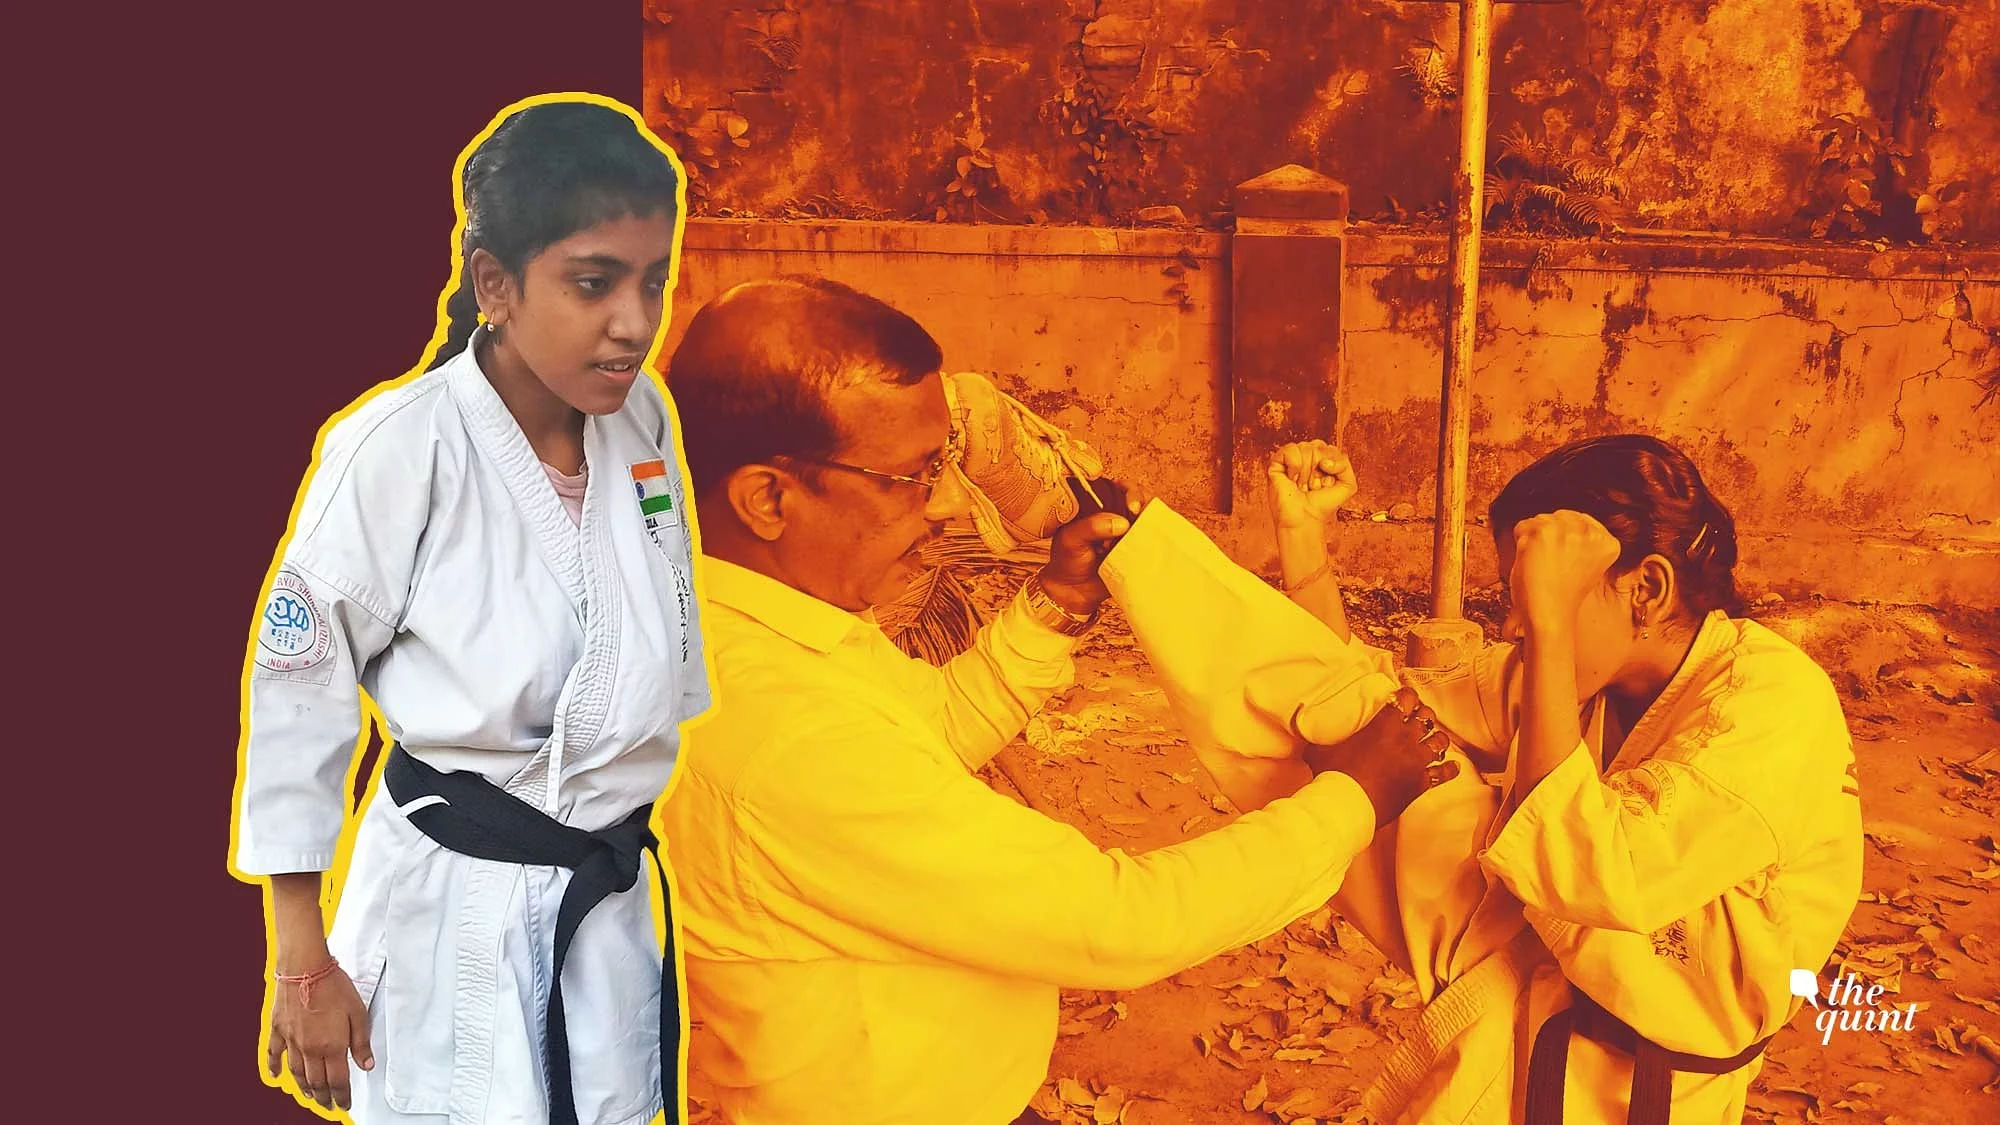 आएशा का दावा है कि दिसंबर 2012 से उसने करीब एक लाख लड़कियों को मार्शल आर्ट सिखाया है